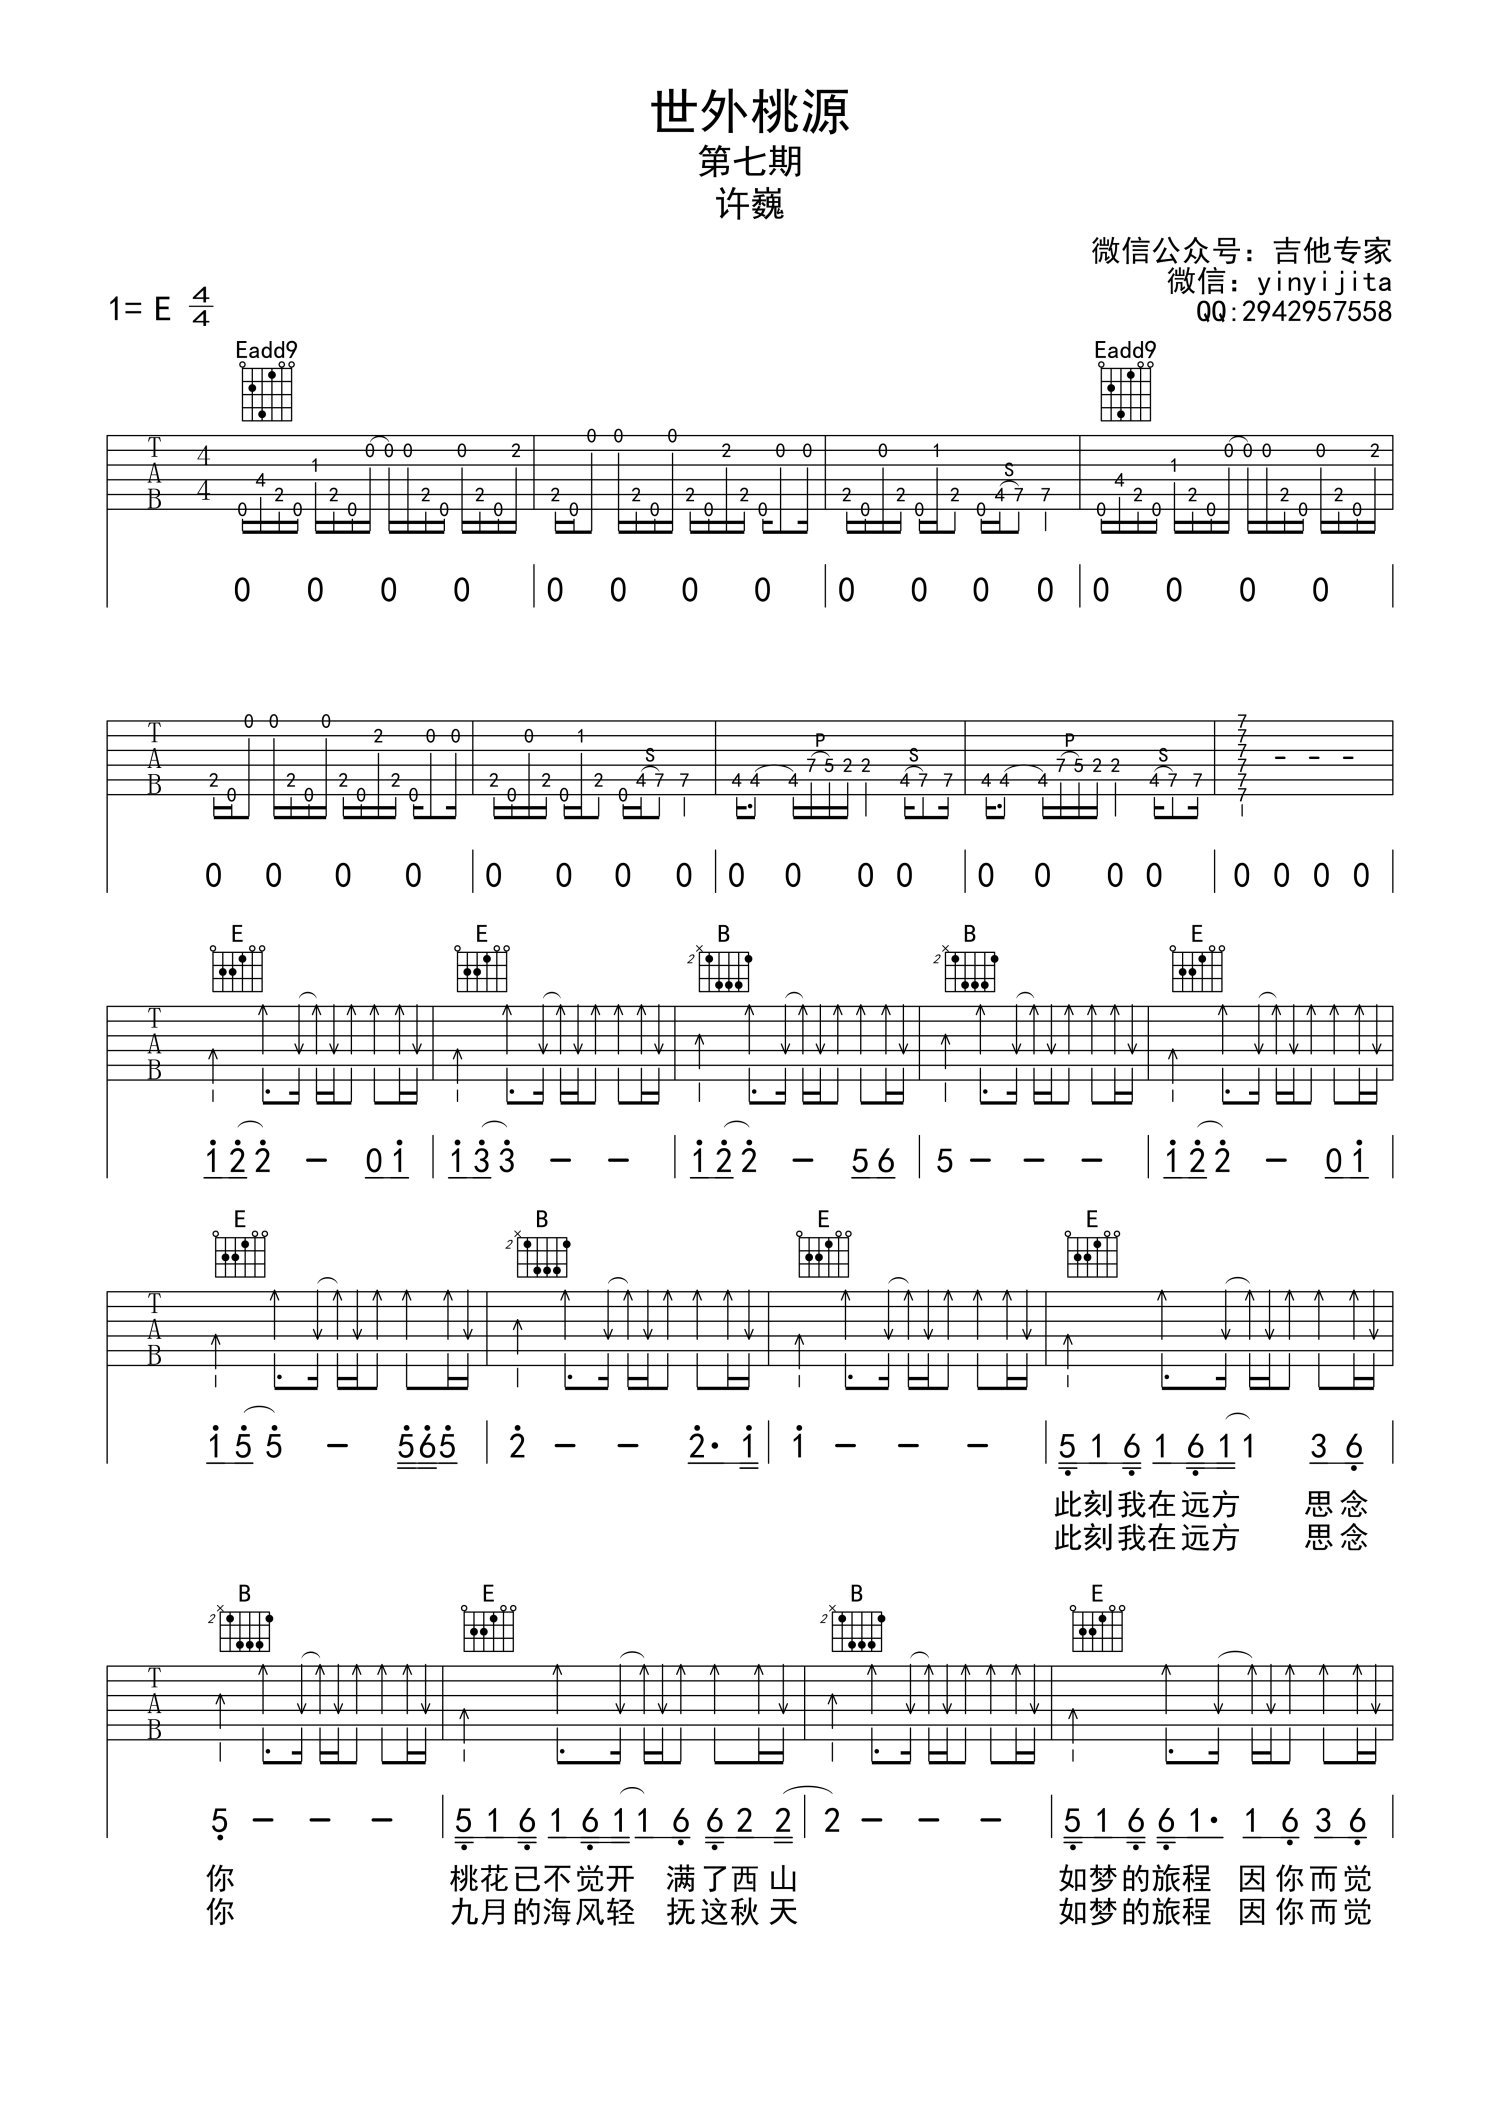 许巍《世外桃源》吉他谱(E调)-Guitar Music Score - GTP吉他谱